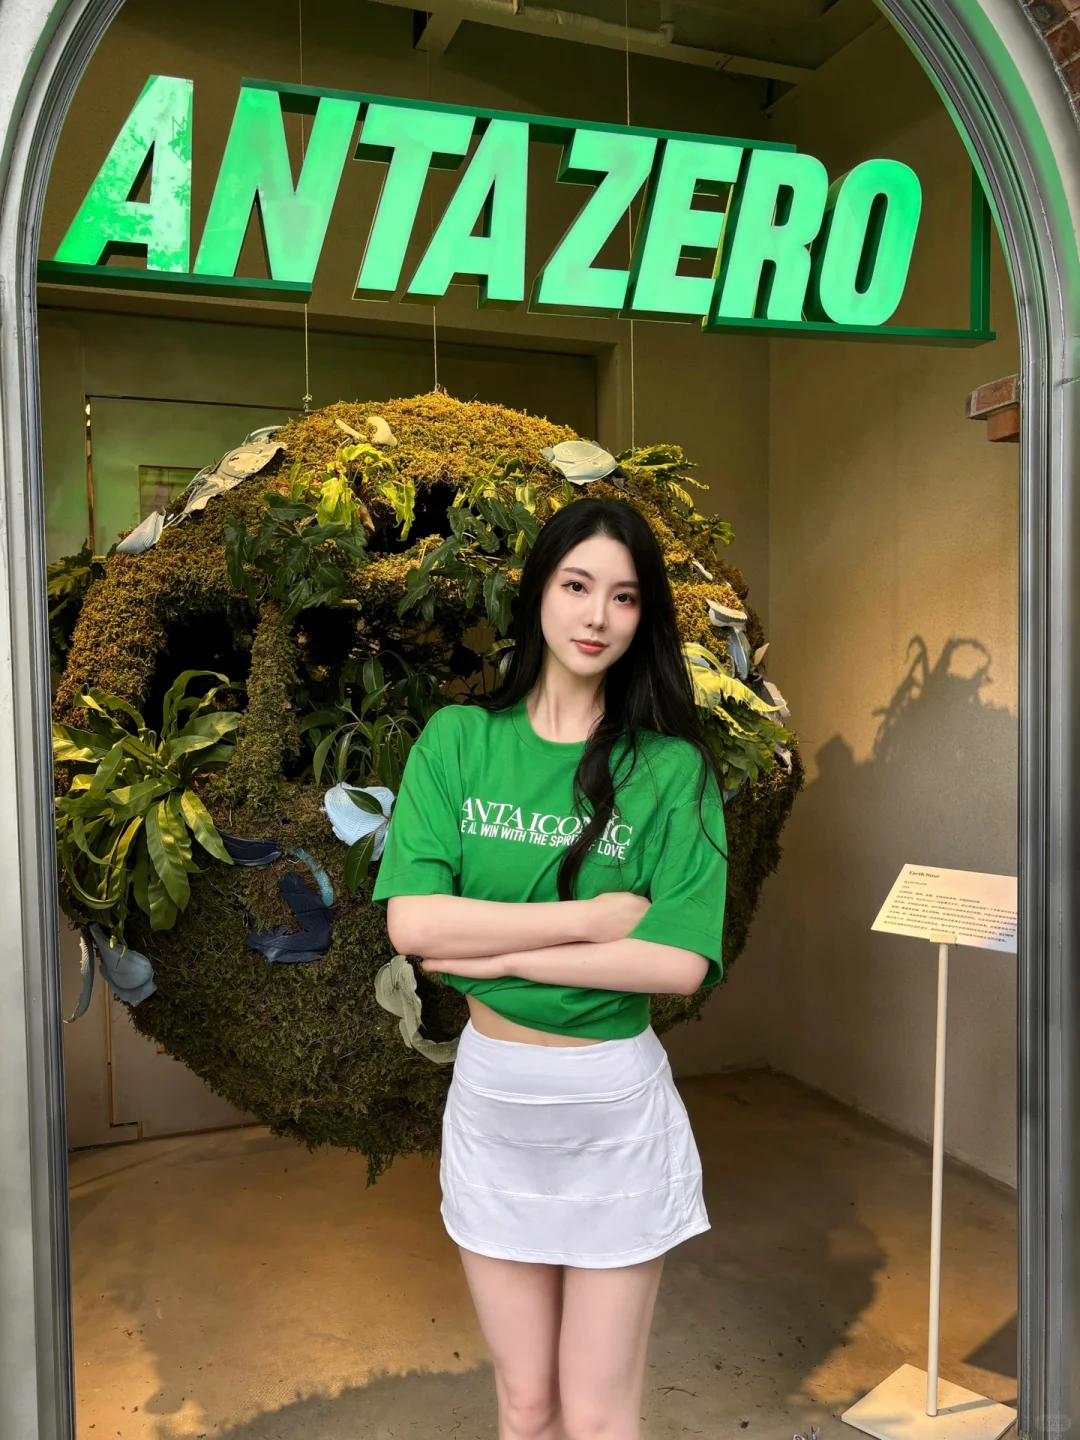 婧子小姐拜托了 在武康路上偶遇安踏0碳使命店，店里充满了绿色元素。